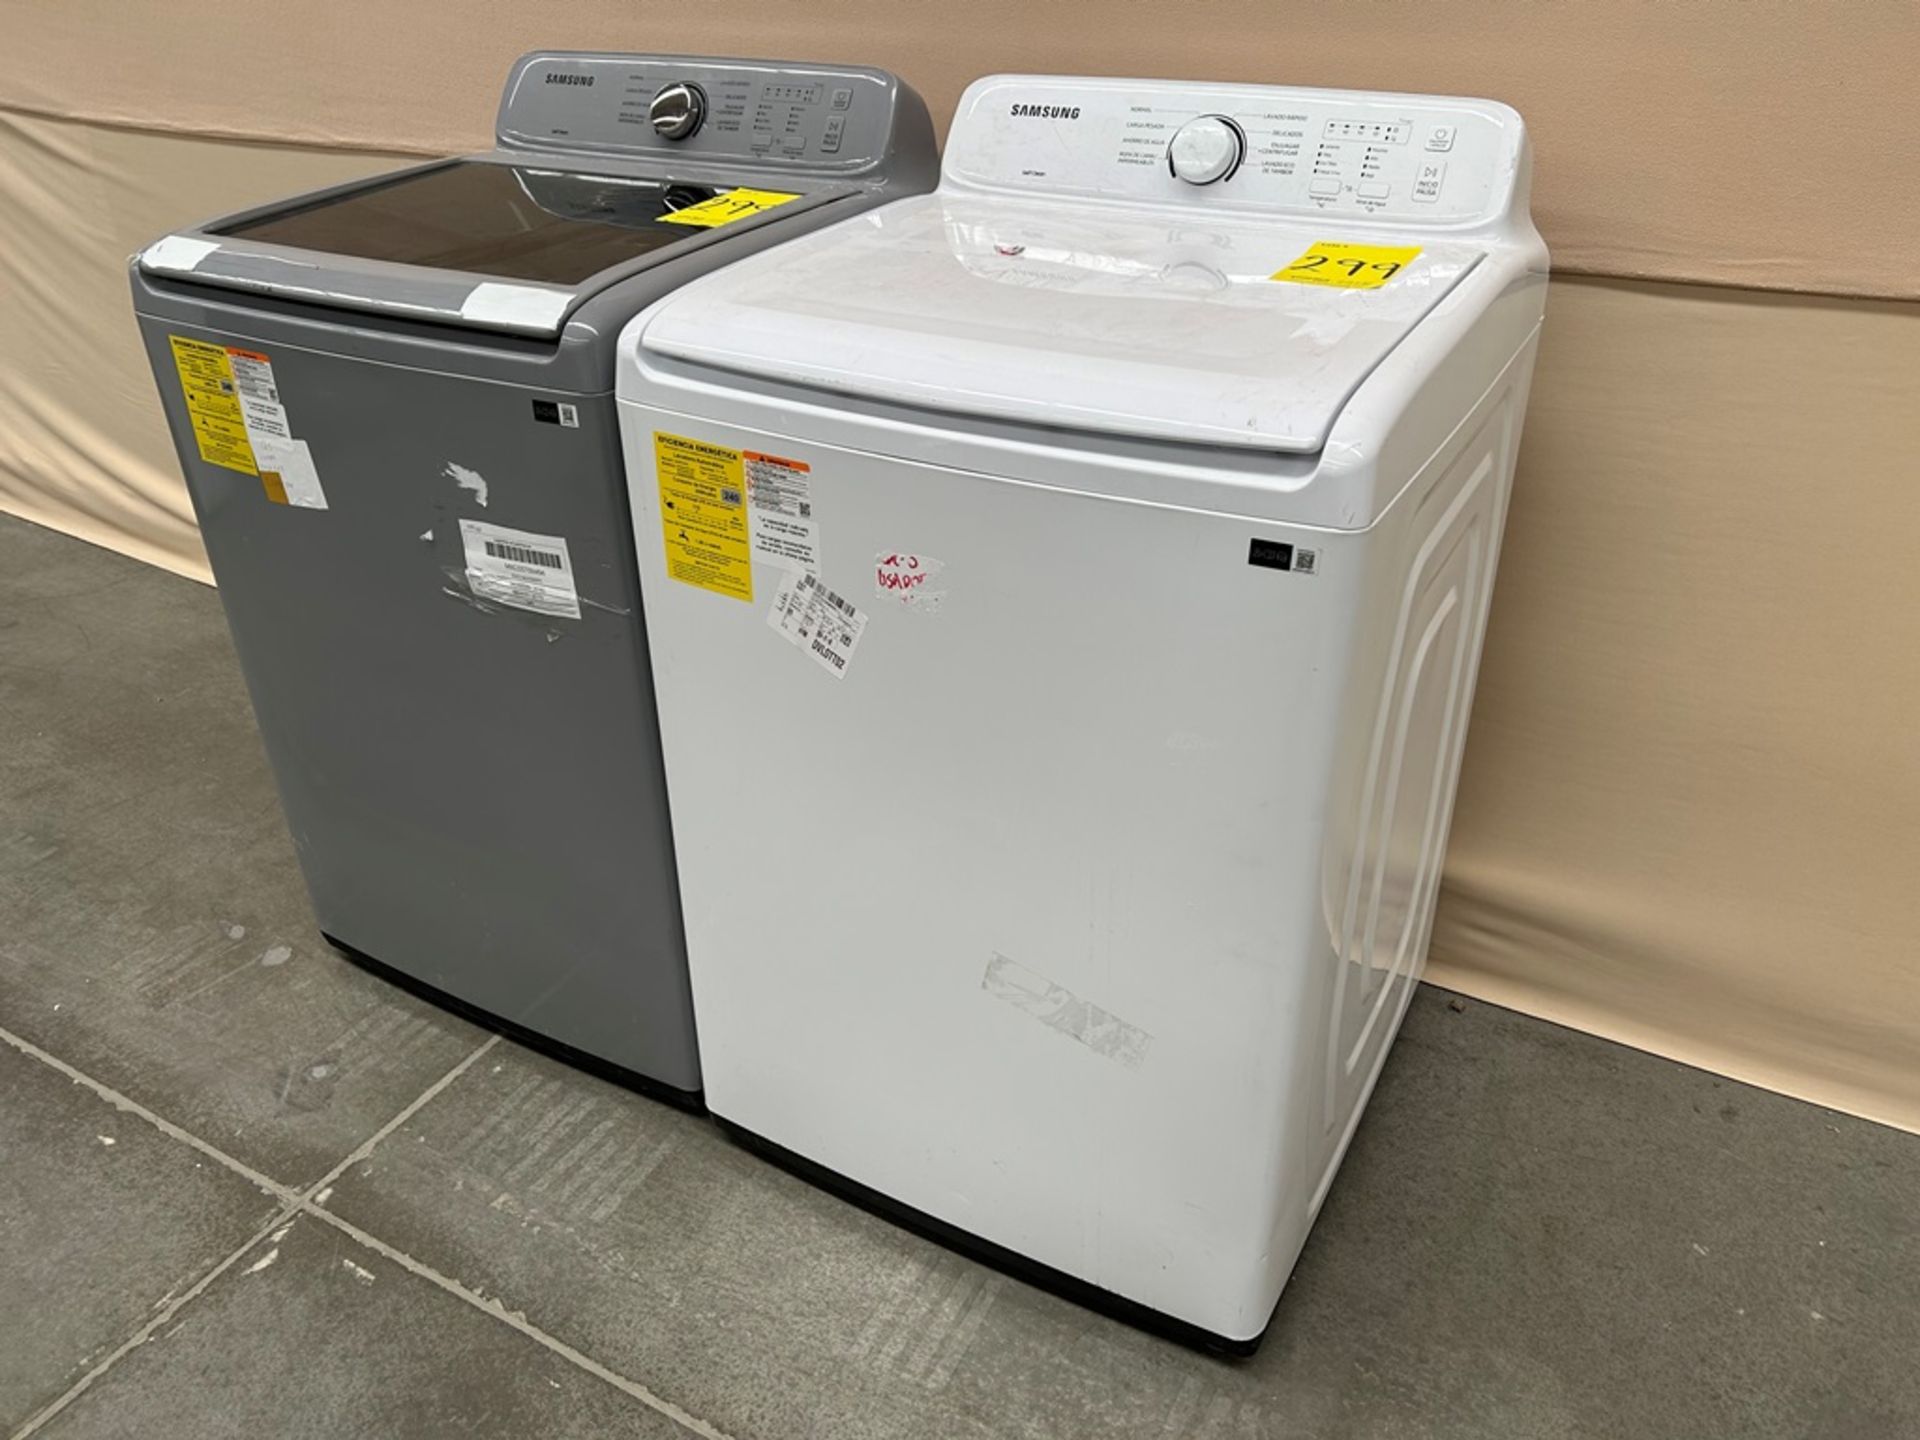 Lote de 2 lavadoras contiene: 1 Lavadora de 20 KG Marca SAMSUNG, Modelo WA20A3350GW, Serie 0027IF, - Image 3 of 6